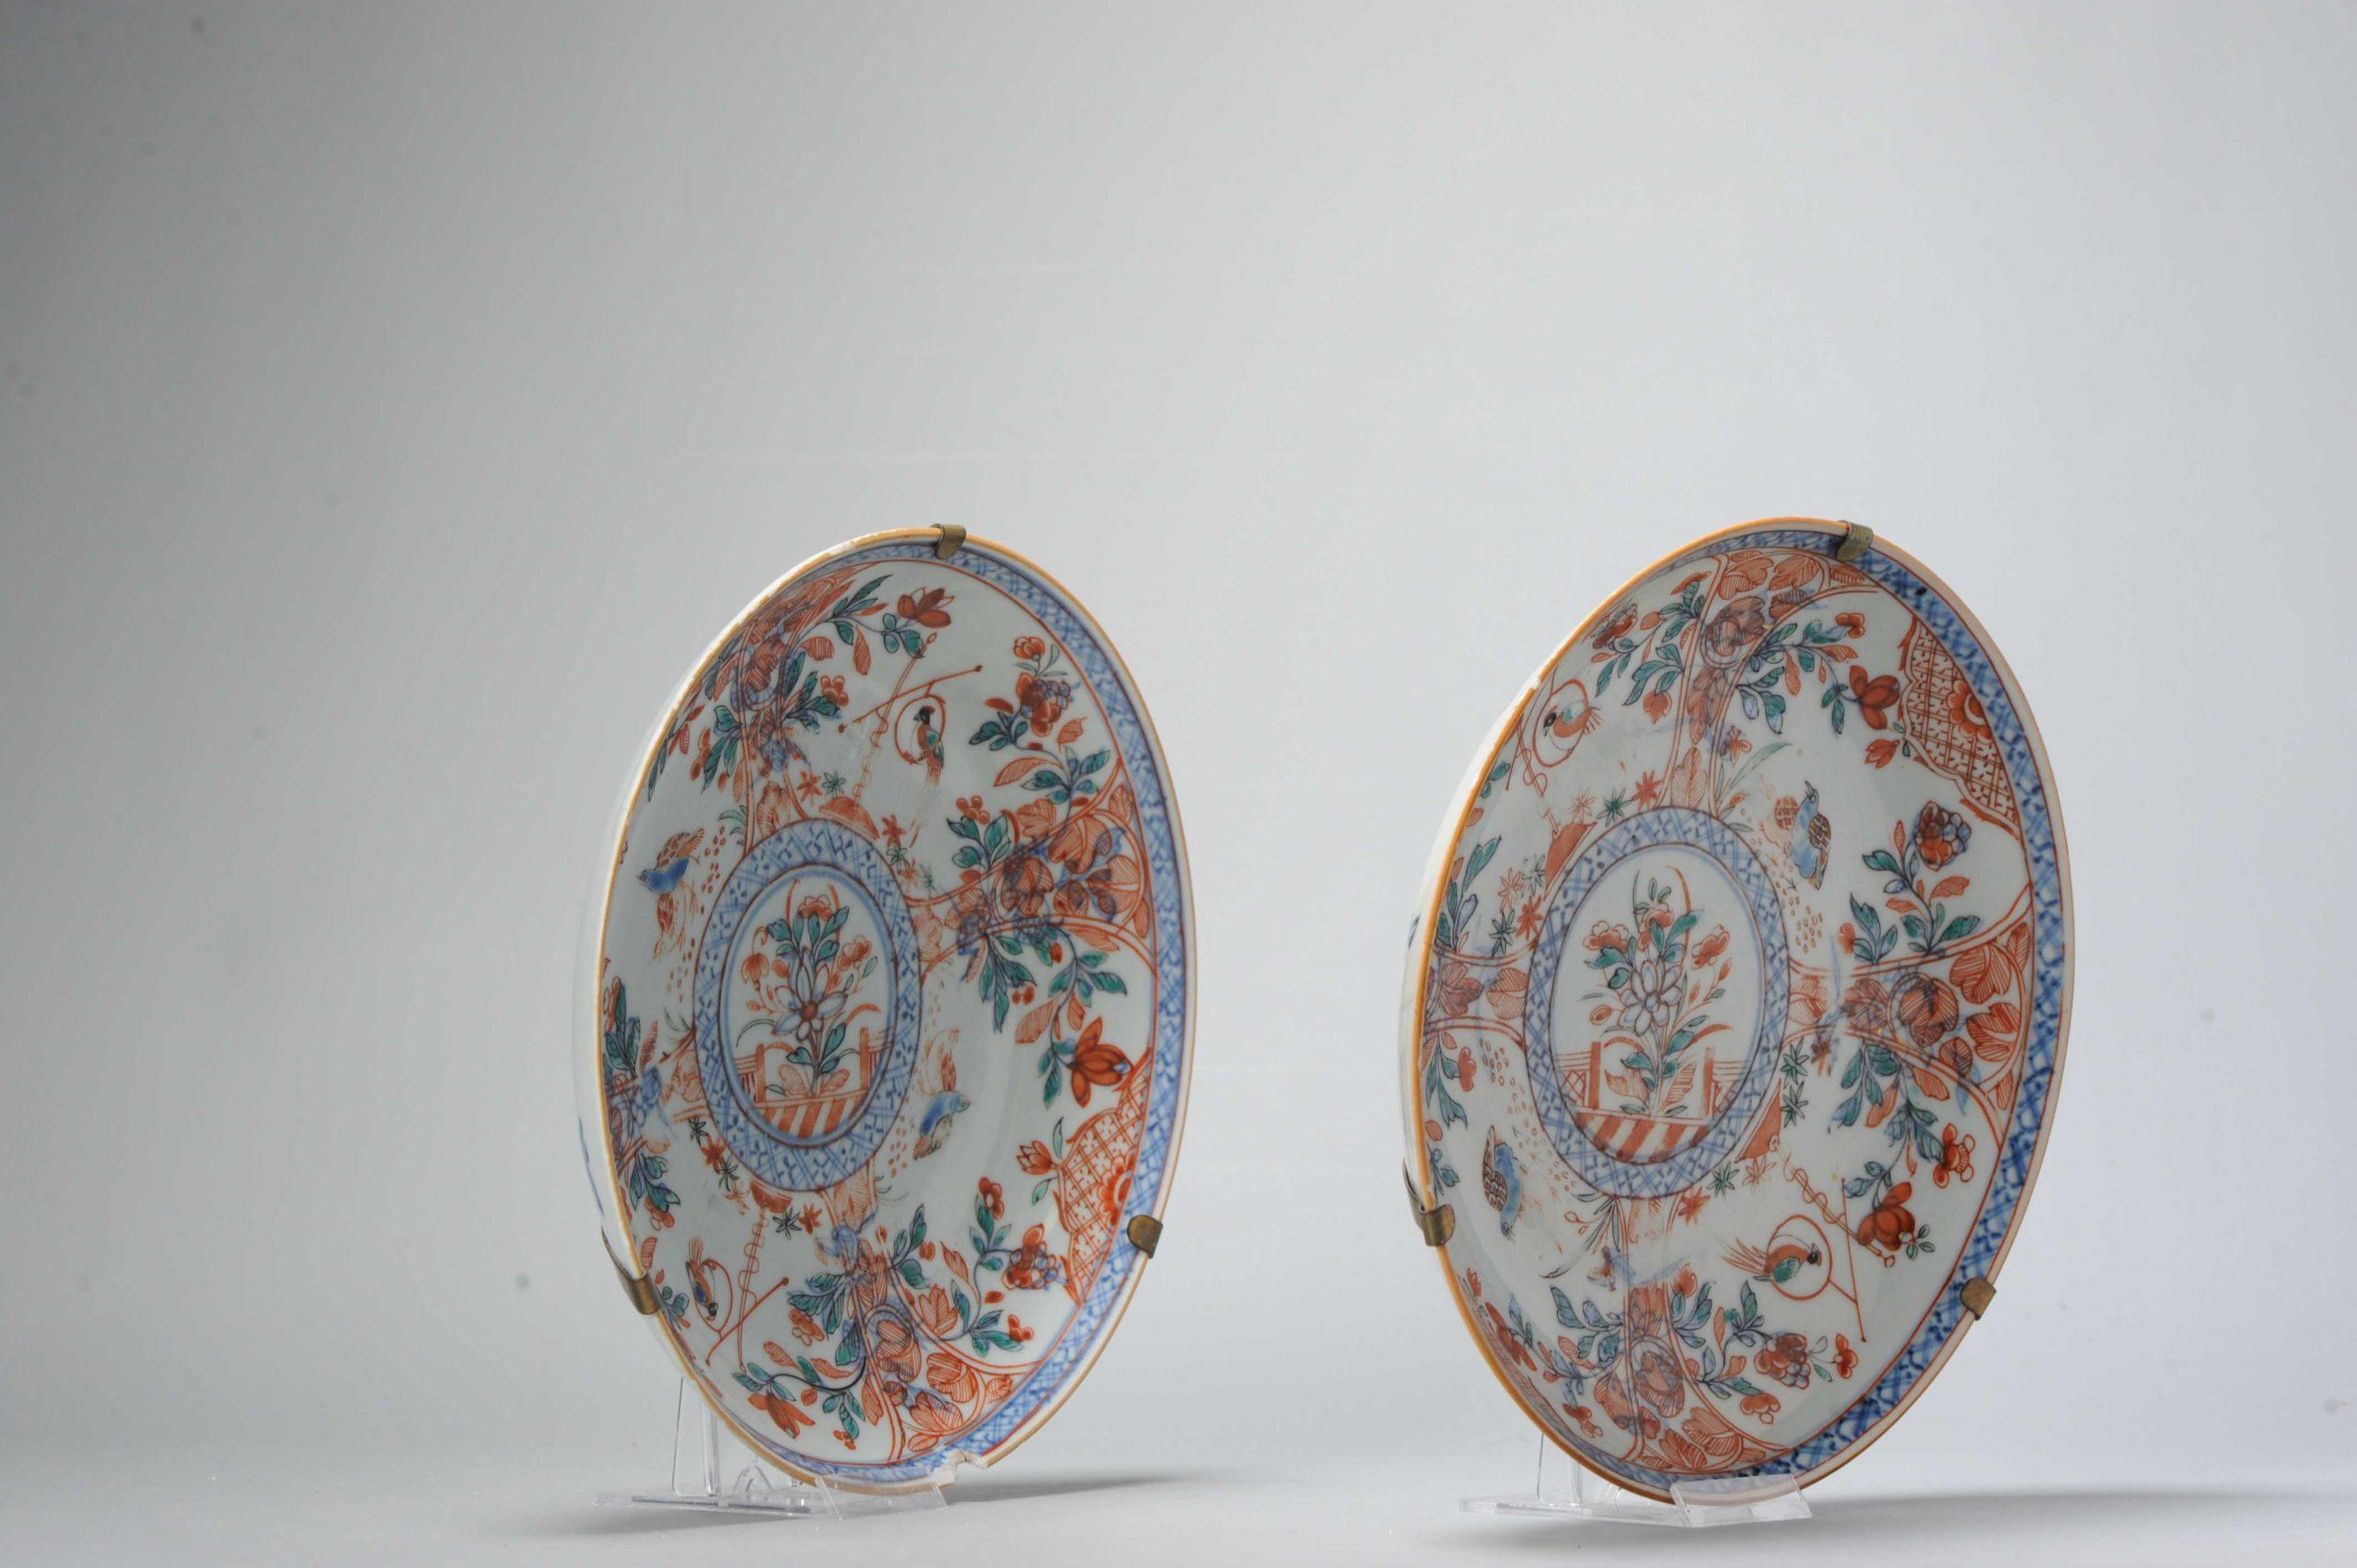 Une paire de deux plats en porcelaine d'Amsterdam Bont du 18e siècle, de très belle facture. Très probablement des plats bleus et blancs de la période Whiting avec un décor de fleurs, de cailles et de perroquets en bont d'Amsterdam. De véritables